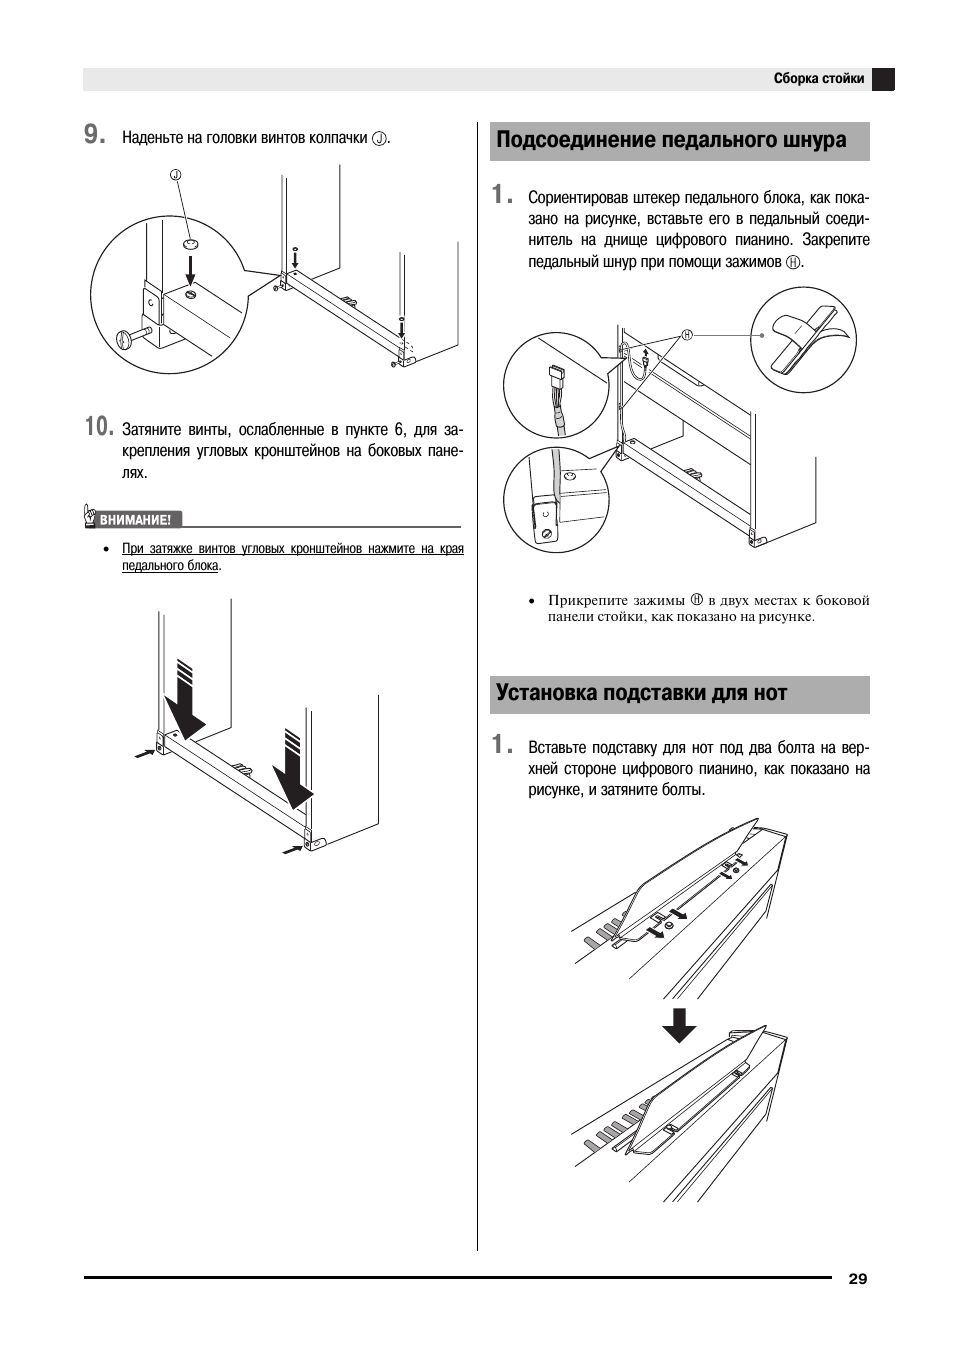 Установка подставки для нот, Подсоединение педального шнура | Инструкция по эксплуатации Casio px-720 | Страница 31 / 39